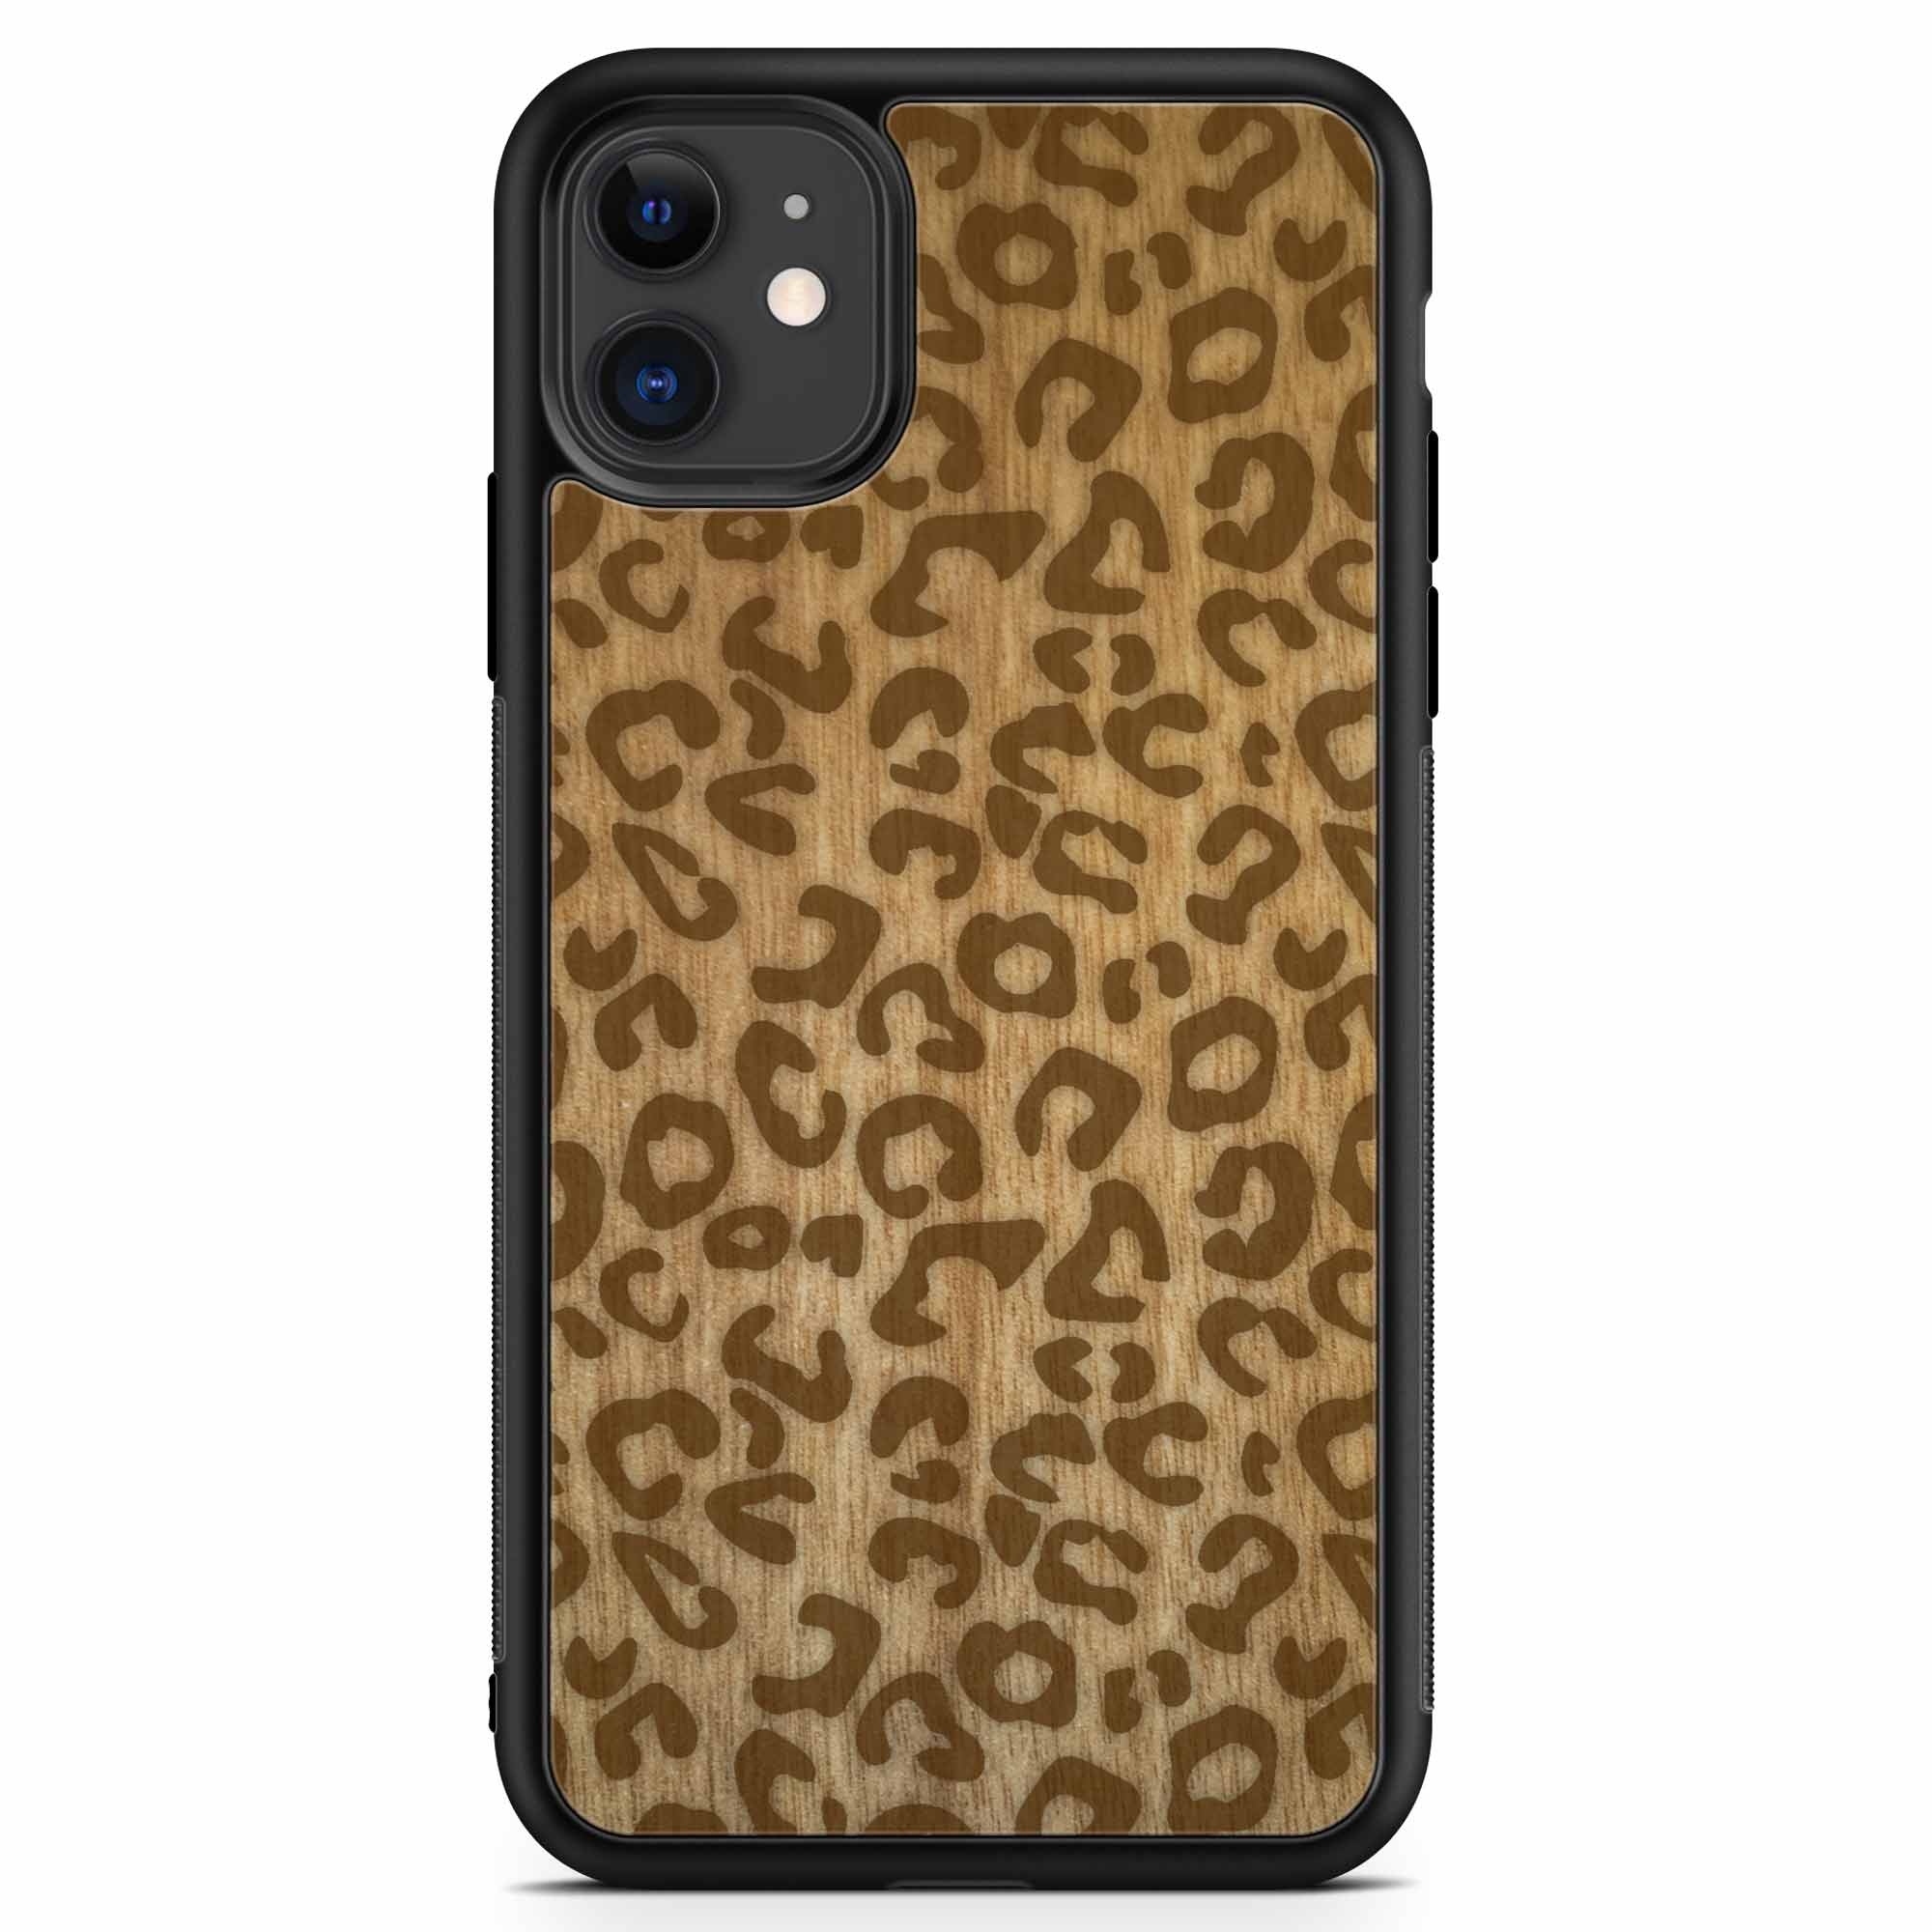 Funda para teléfono de madera con estampado de guepardo para iPhone 11